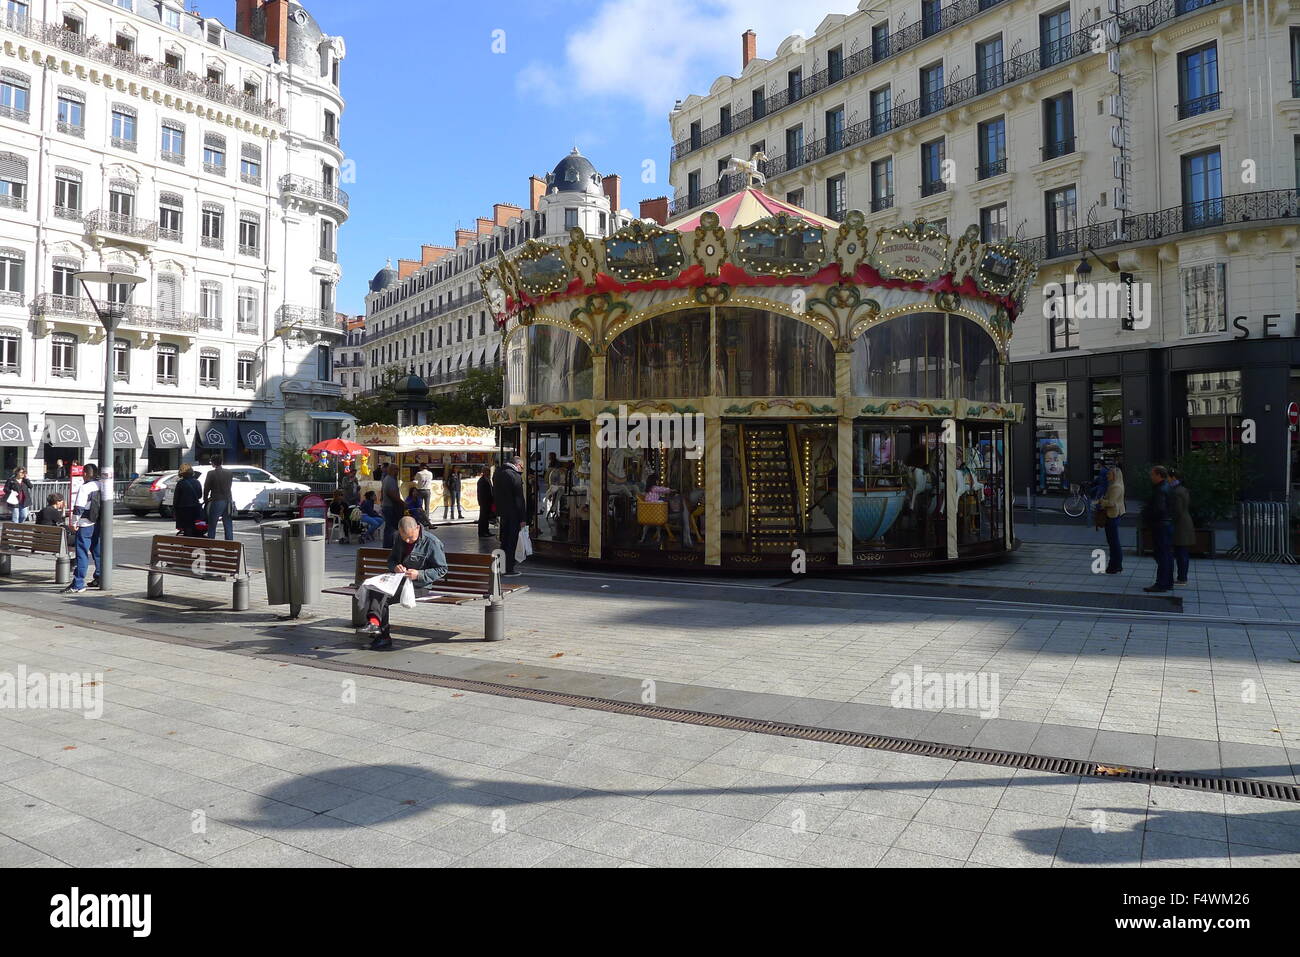 Carousel at Place de la République in Lyon, France Stock Photo